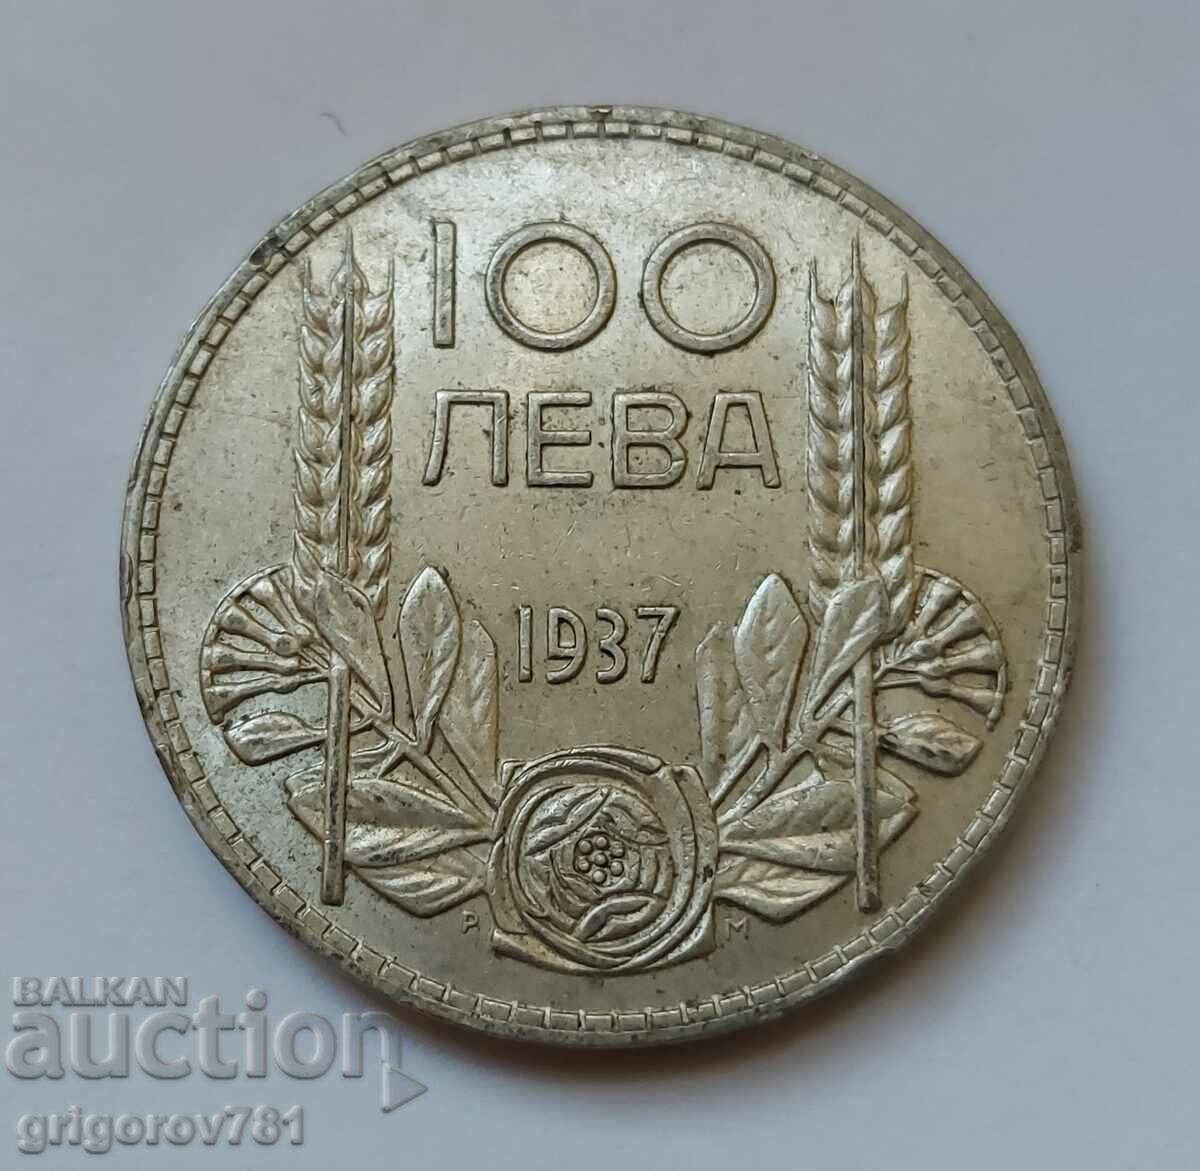 100 leva silver Bulgaria 1937 - silver coin #83